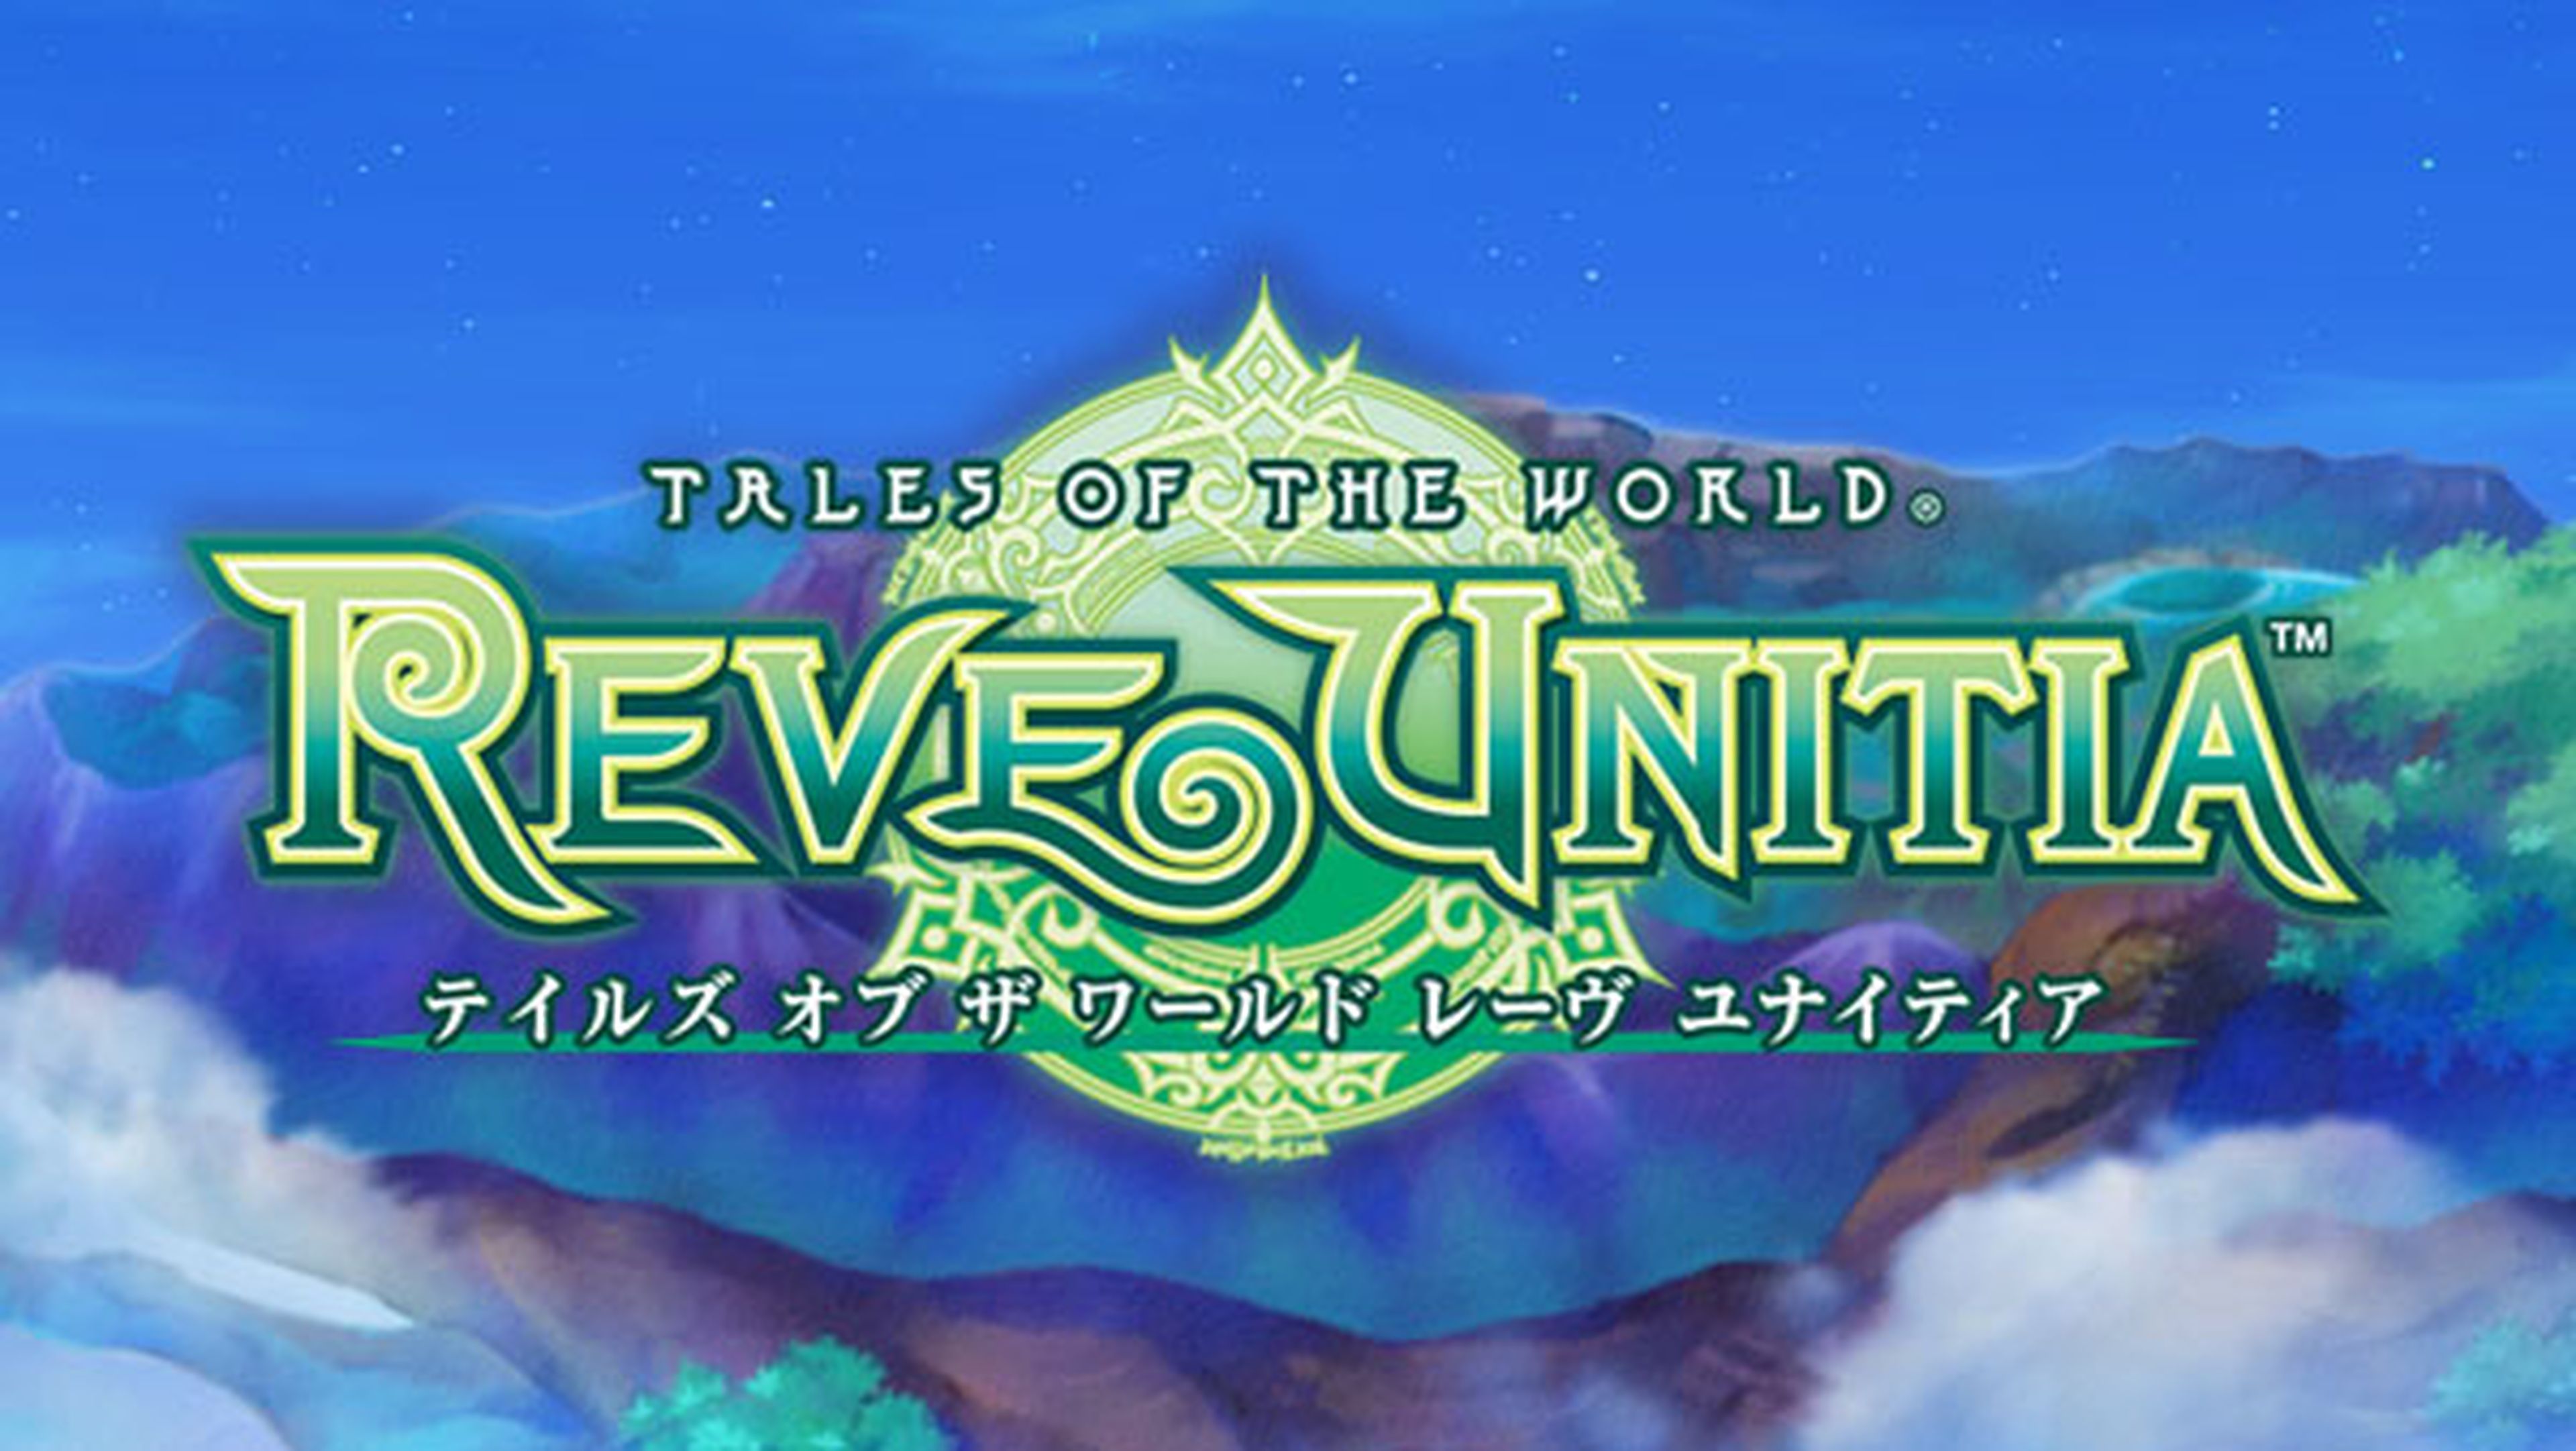 Tales of the World Reve Unitia ya tiene fecha en Japón